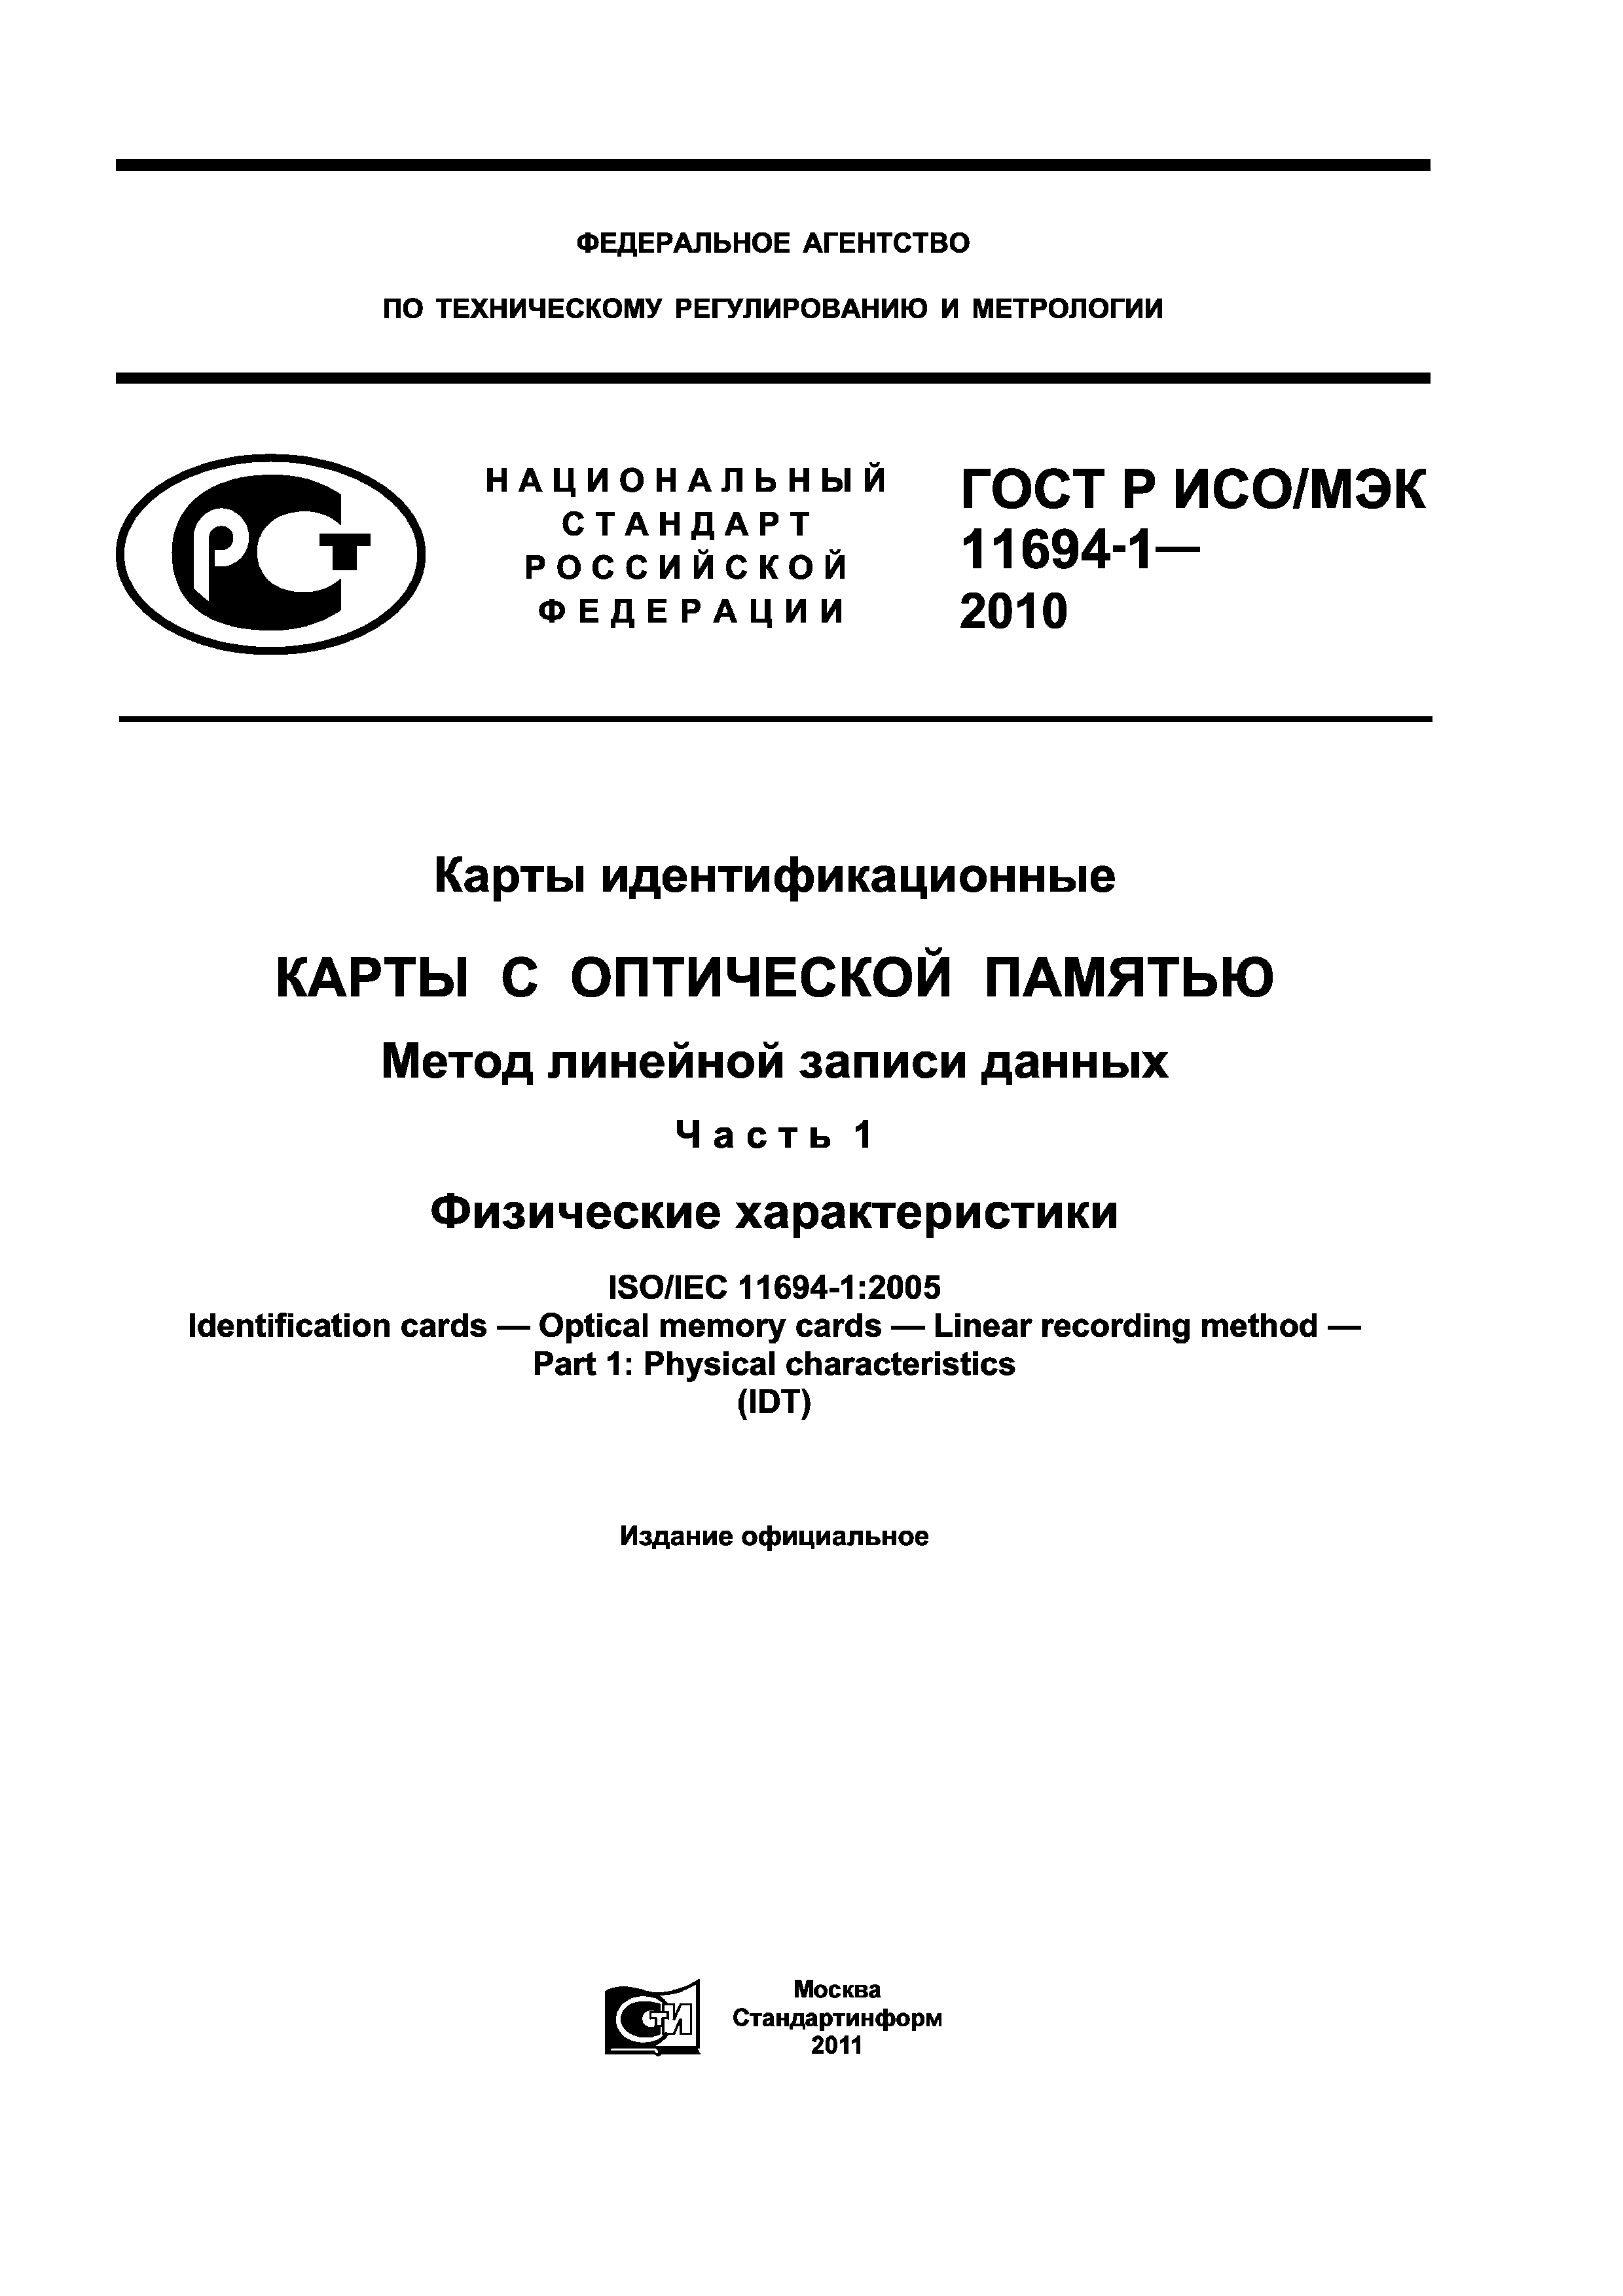 ГОСТ Р ИСО/МЭК 11694-1-2010